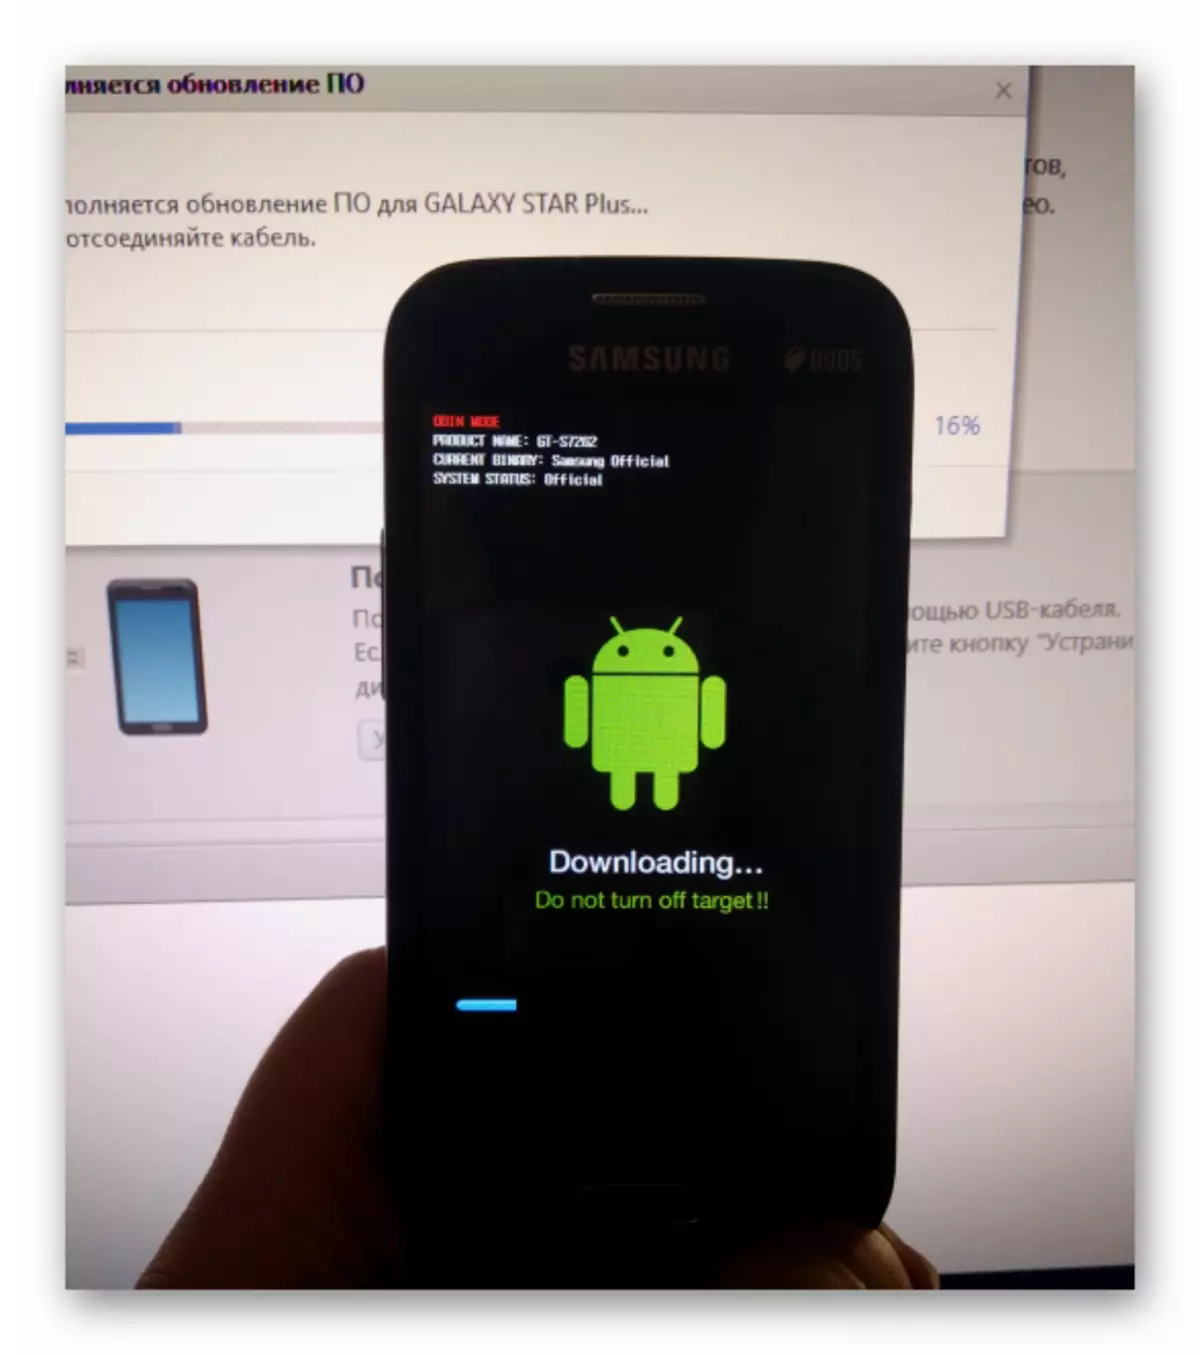 SAMSUNG GALAXY STAR PLUS MISE À JOUR INTRICATOR KIES GT-S7262 sur l'écran Smartphone